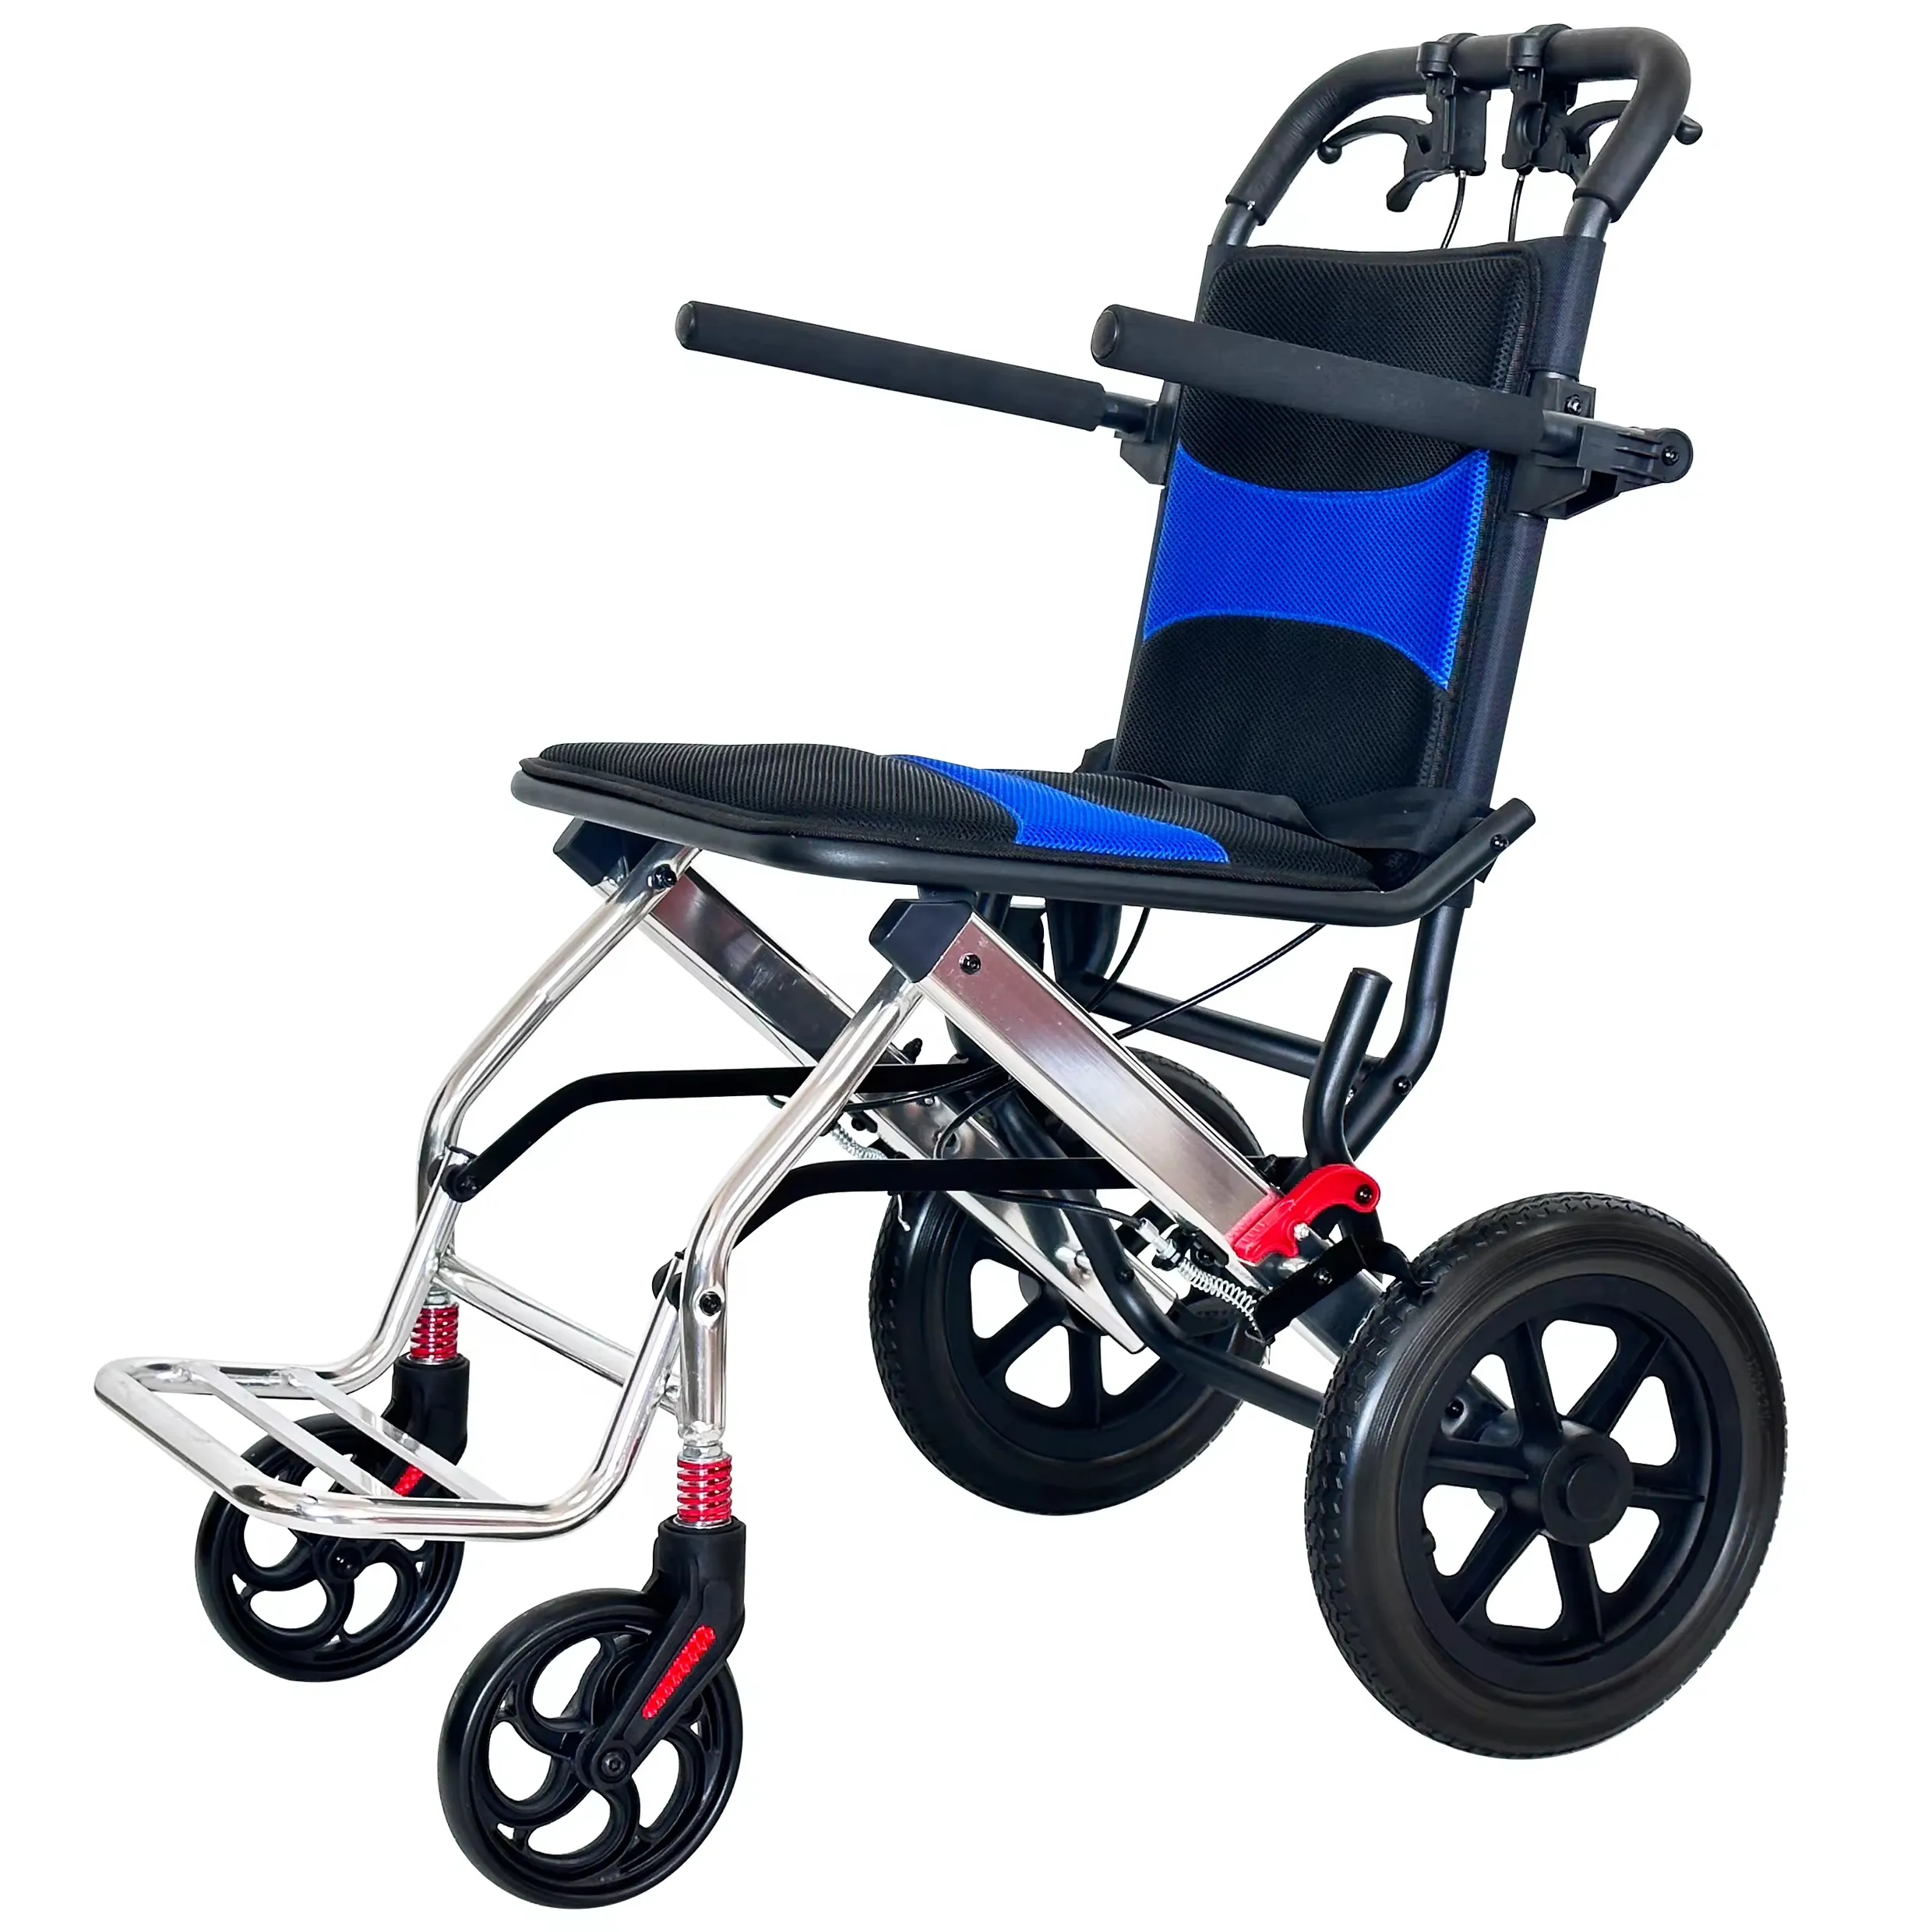 Silla de ruedas manual ligera de aleación de aluminio personalizada barata superventas de fábrica para discapacitados